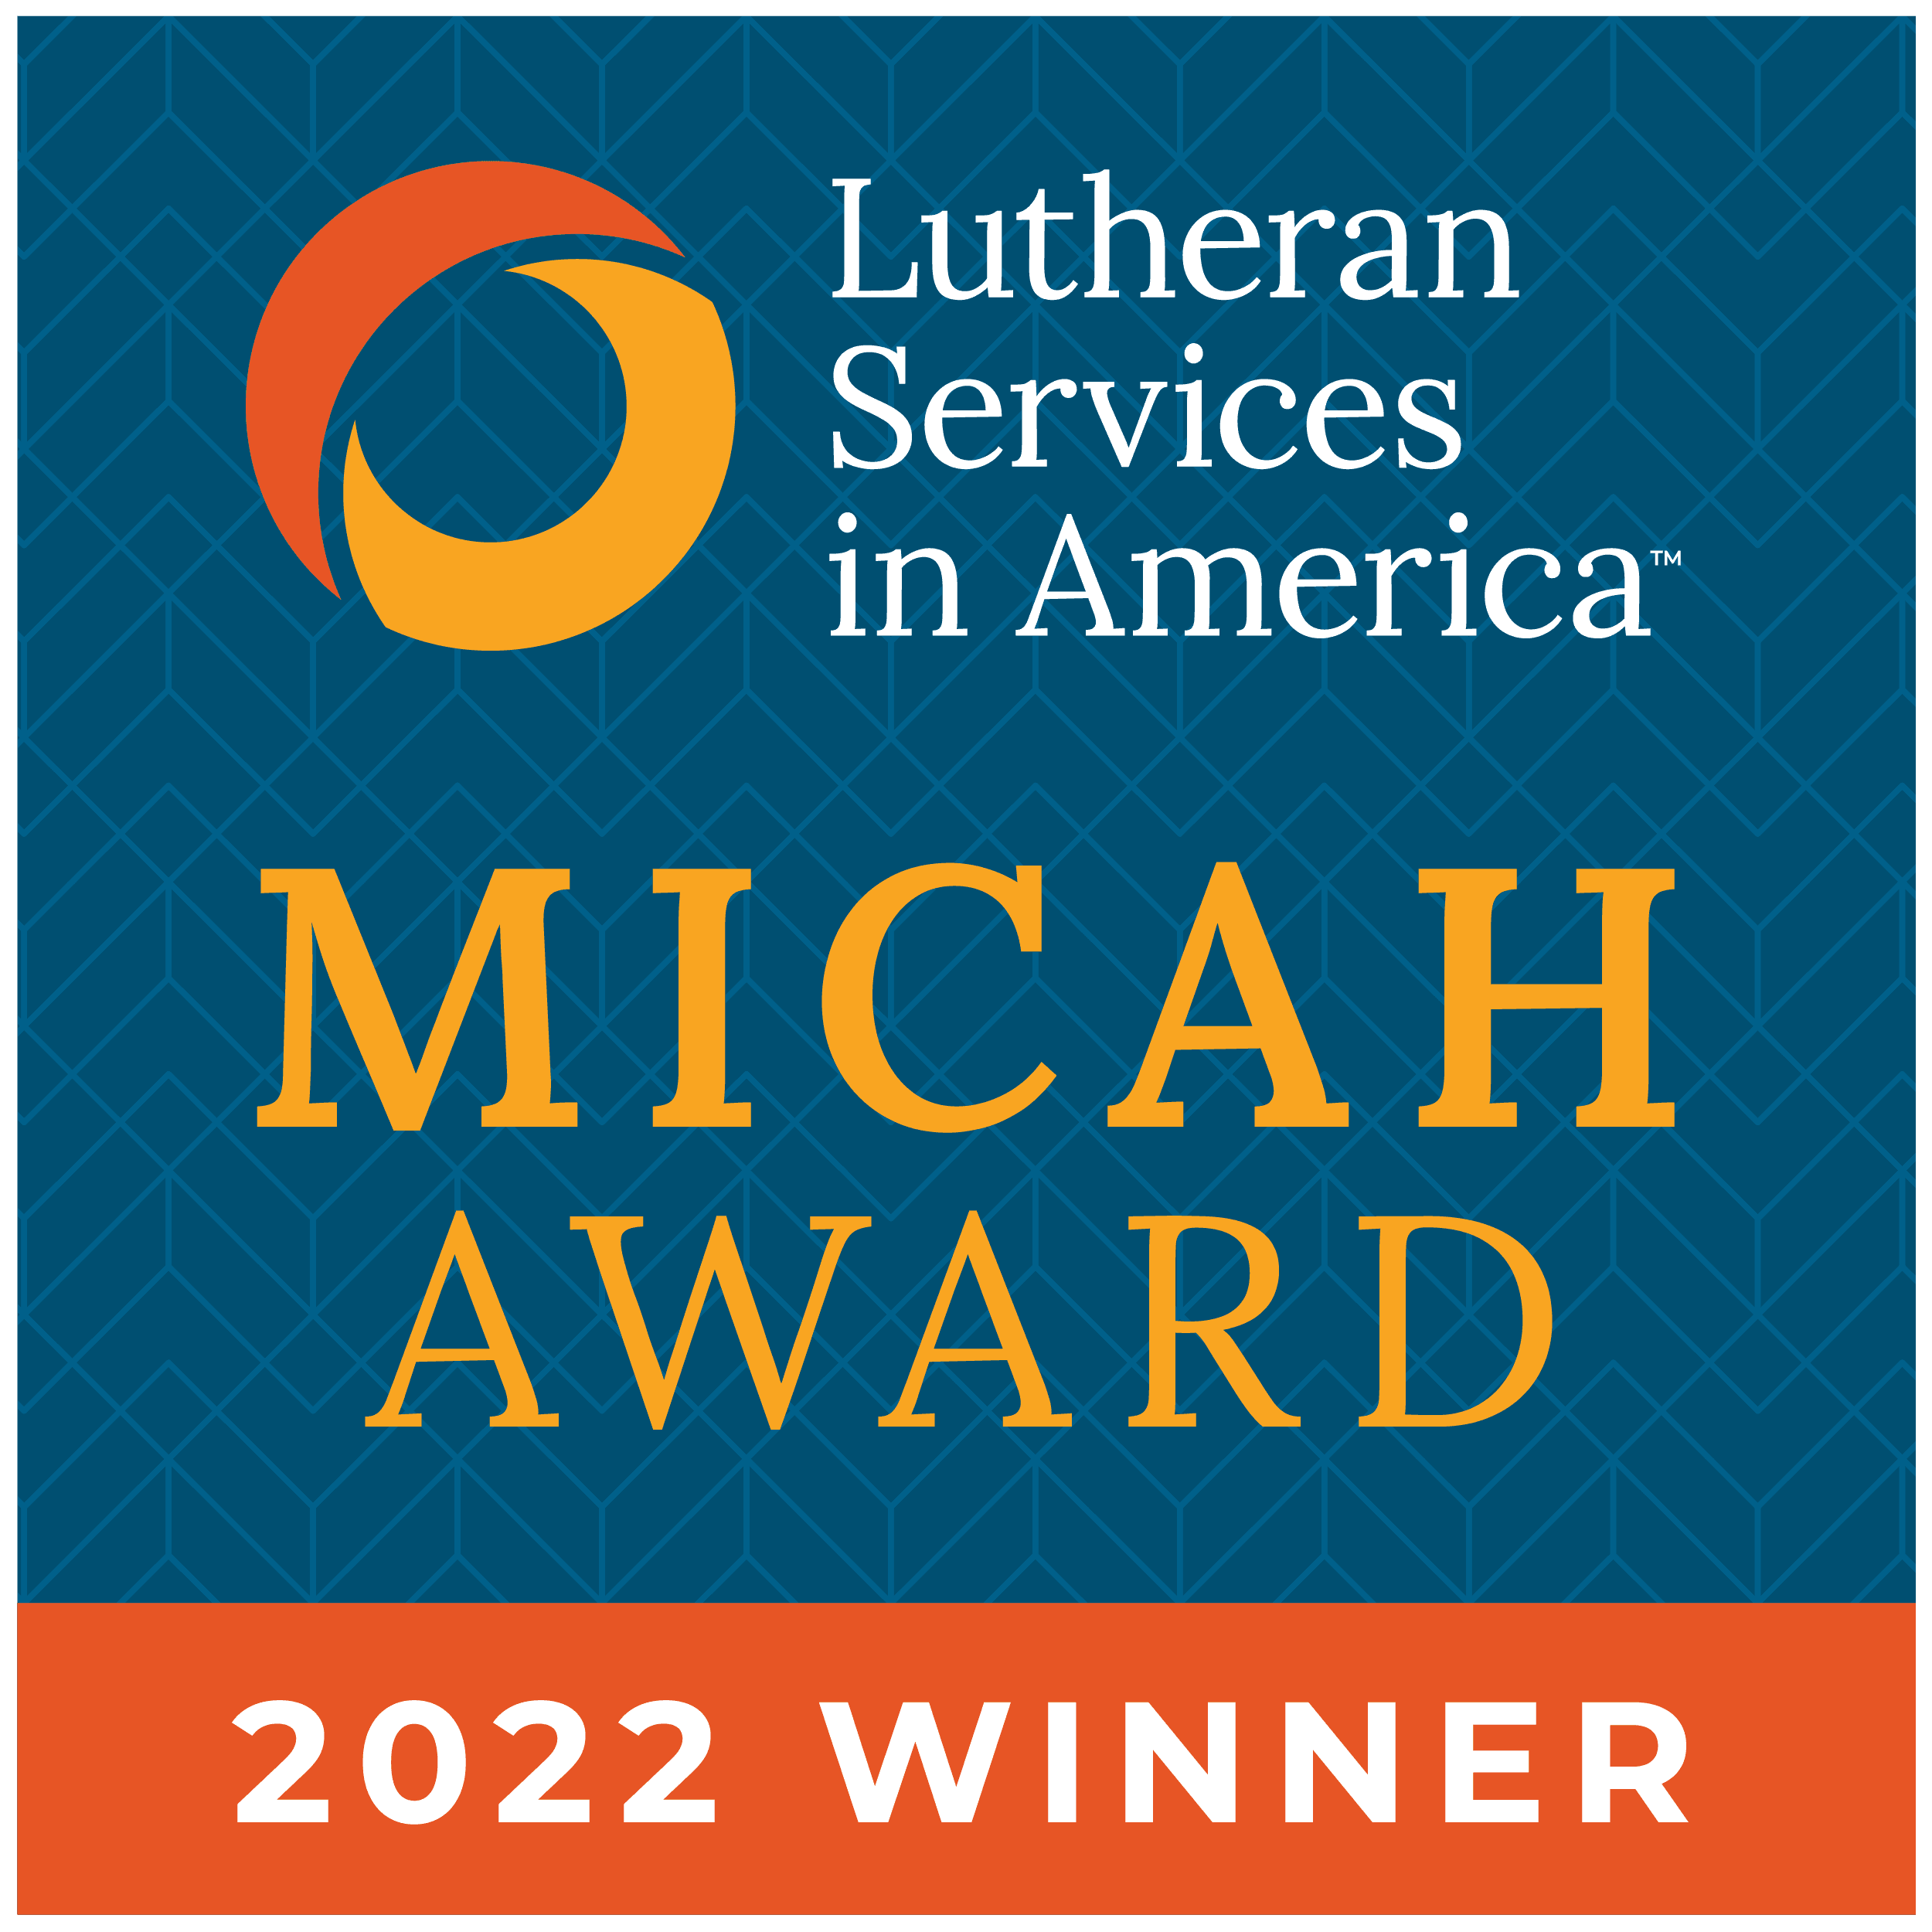 Micah Award